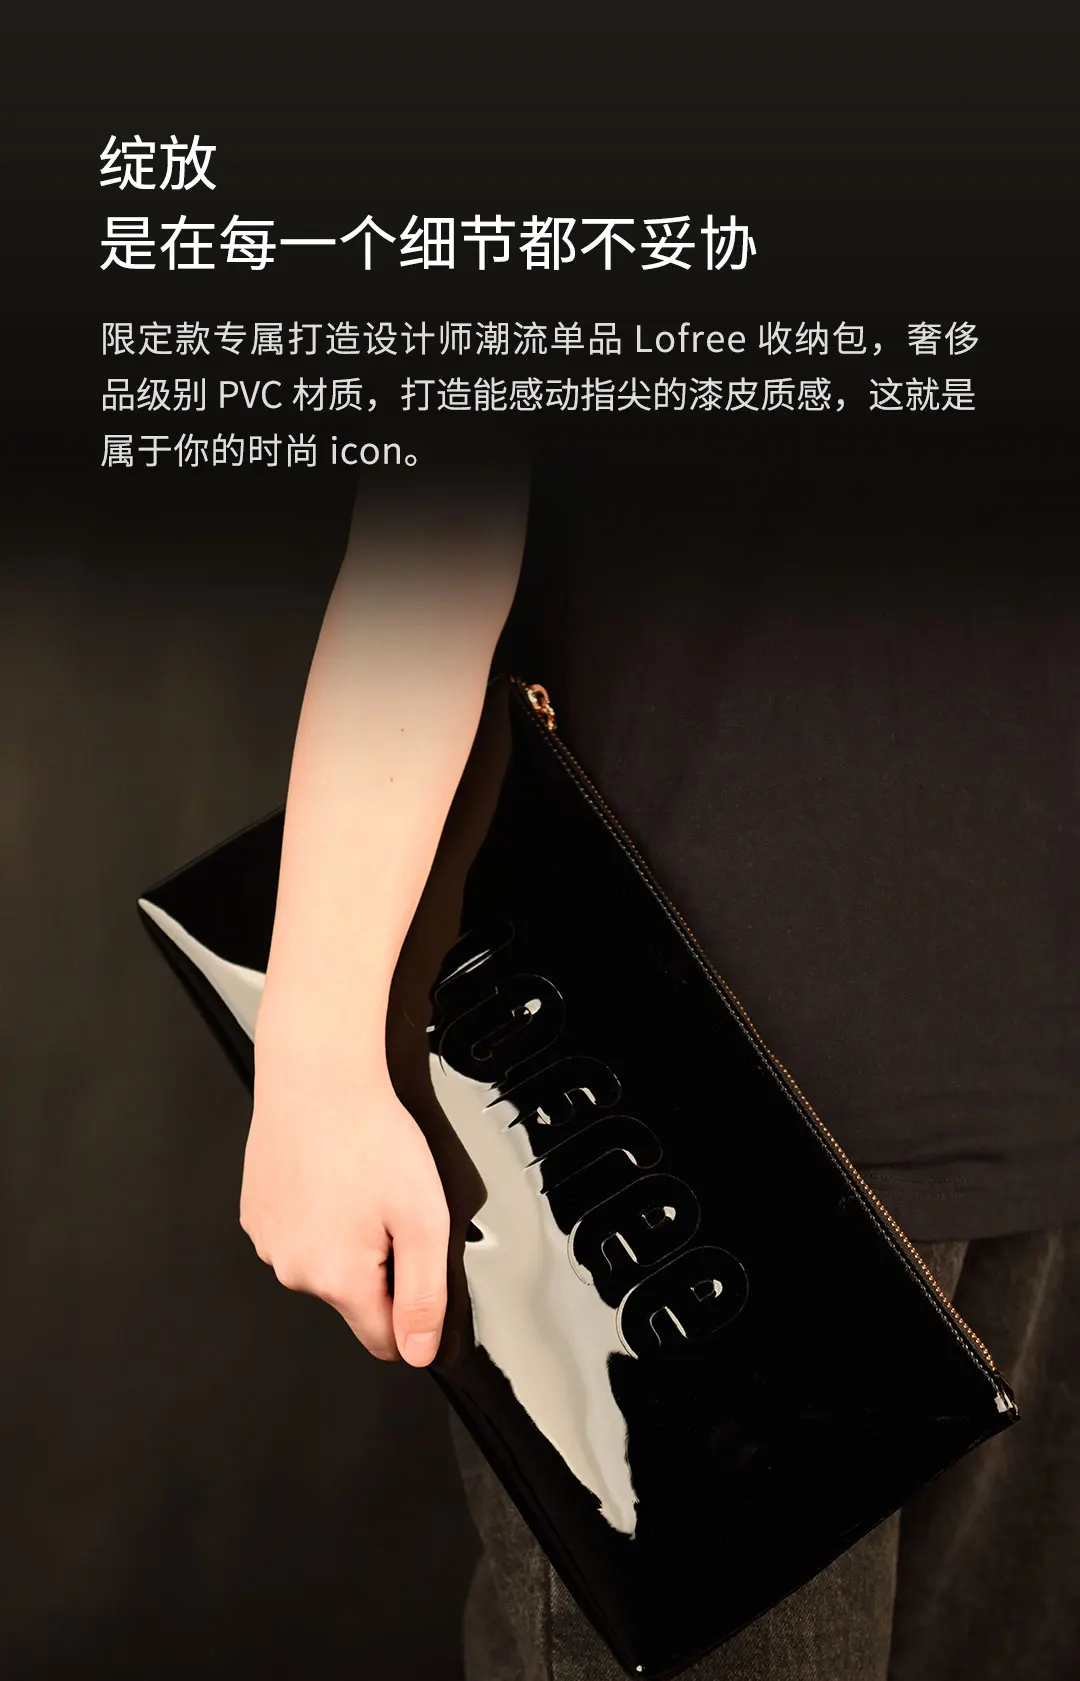 Оригинальная Беспроводная bluetooth-механическая клавиатура Xiaomi Lofree DOT с цветком, цветная игровая клавиатура с помадой, светодиодный подсветка